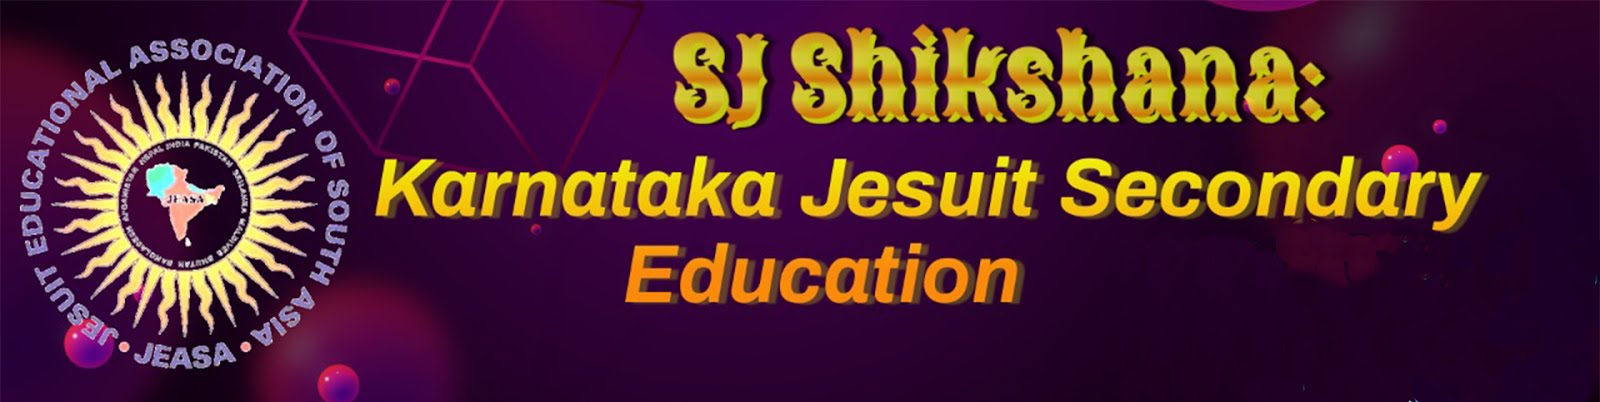 SJ Shikshana: Karnataka Jesuit Secondary Education